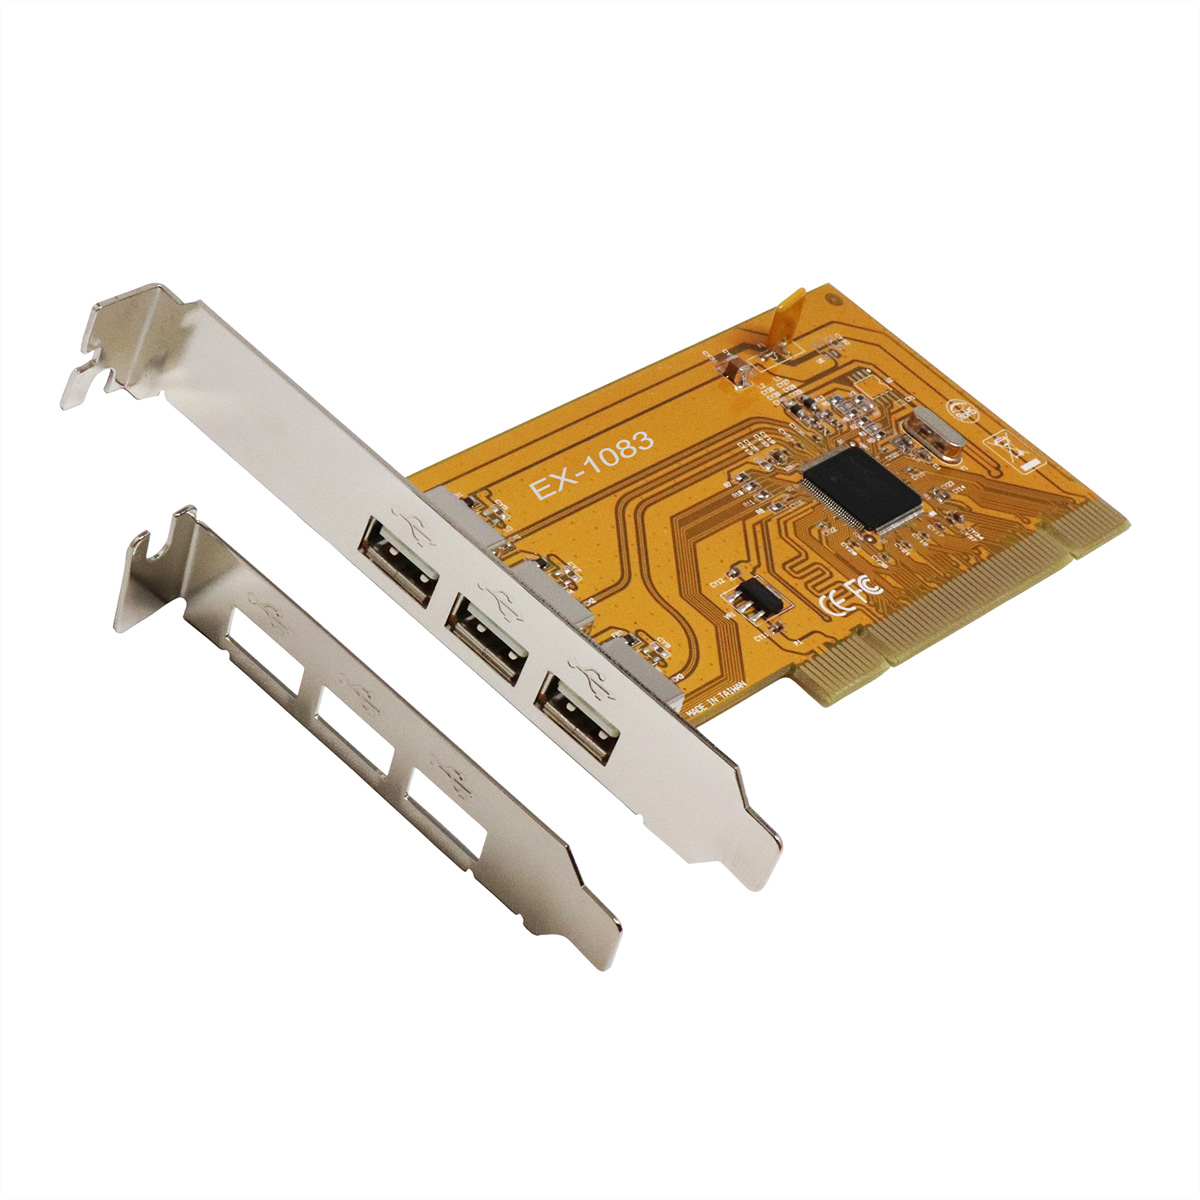 EXSYS EX-1083 USB 2.0 PCI Karte mit 3 Ports